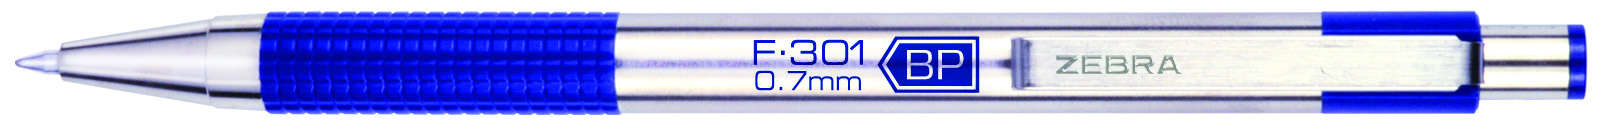 F-301 stainless steel ballpoint pen